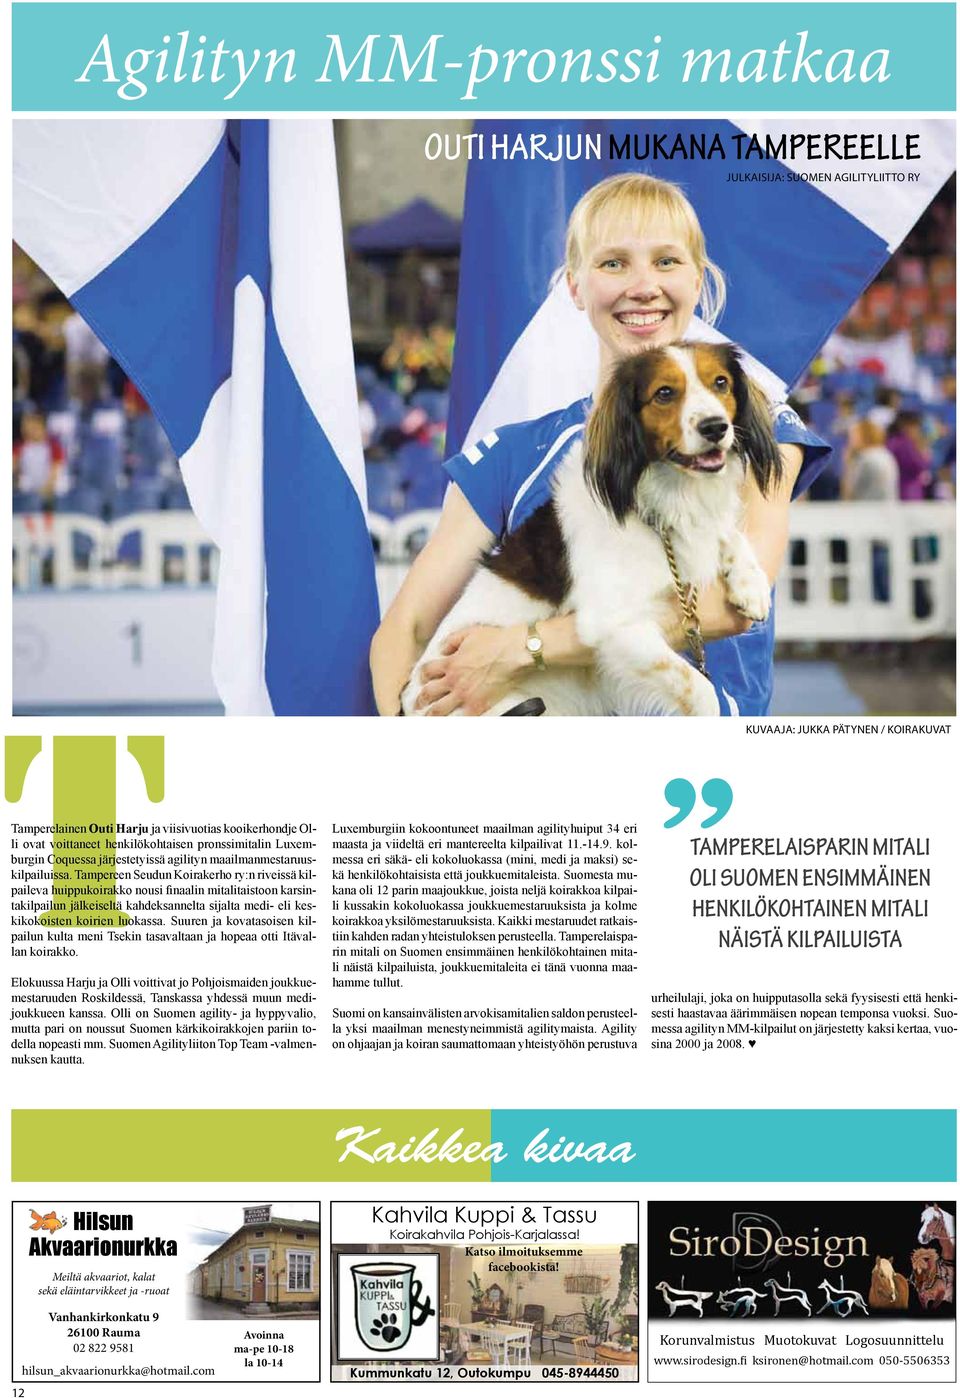 Tampereen Seudun Koirakerho ry:n riveissä kilpaileva huippukoirakko nousi finaalin mitalitaistoon karsintakilpailun jälkeiseltä kahdeksannelta sijalta medi- eli keskikokoisten koirien luokassa.